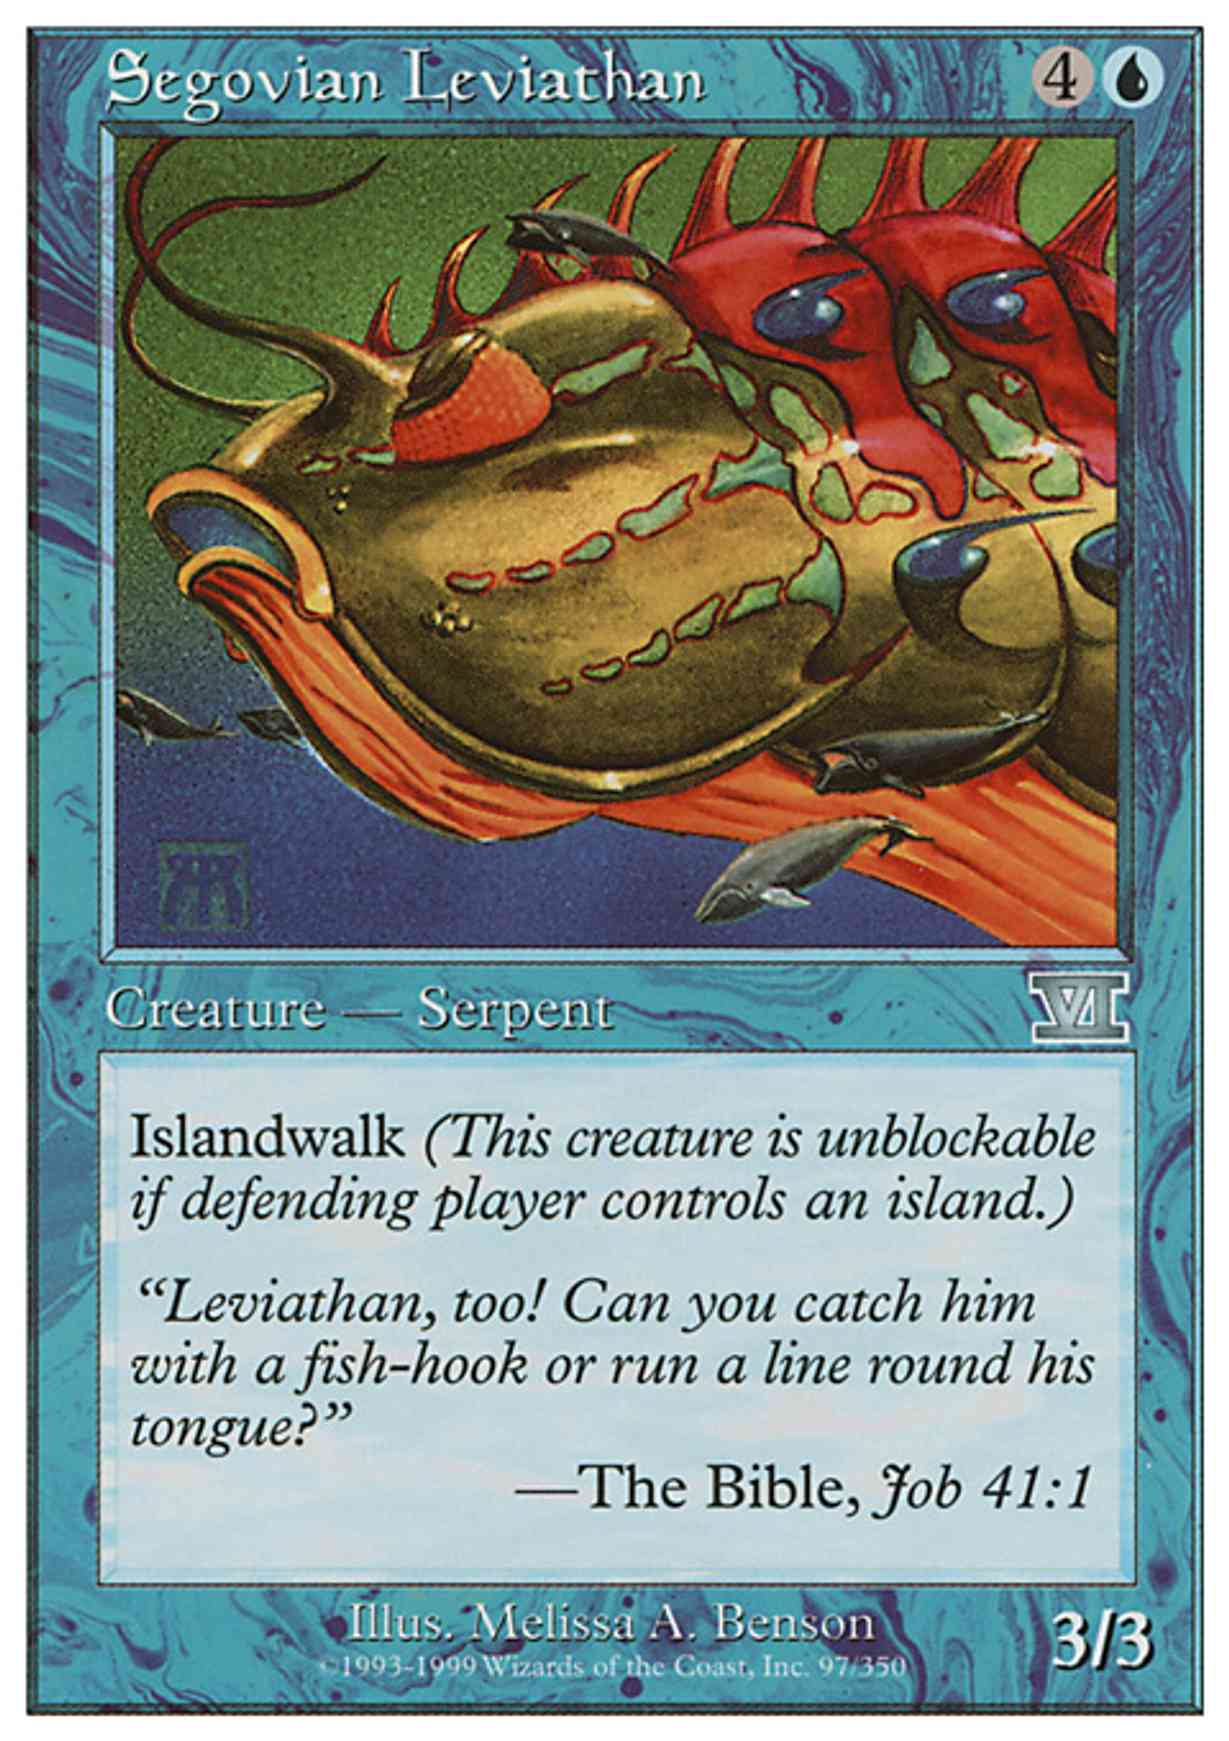 Segovian Leviathan magic card front